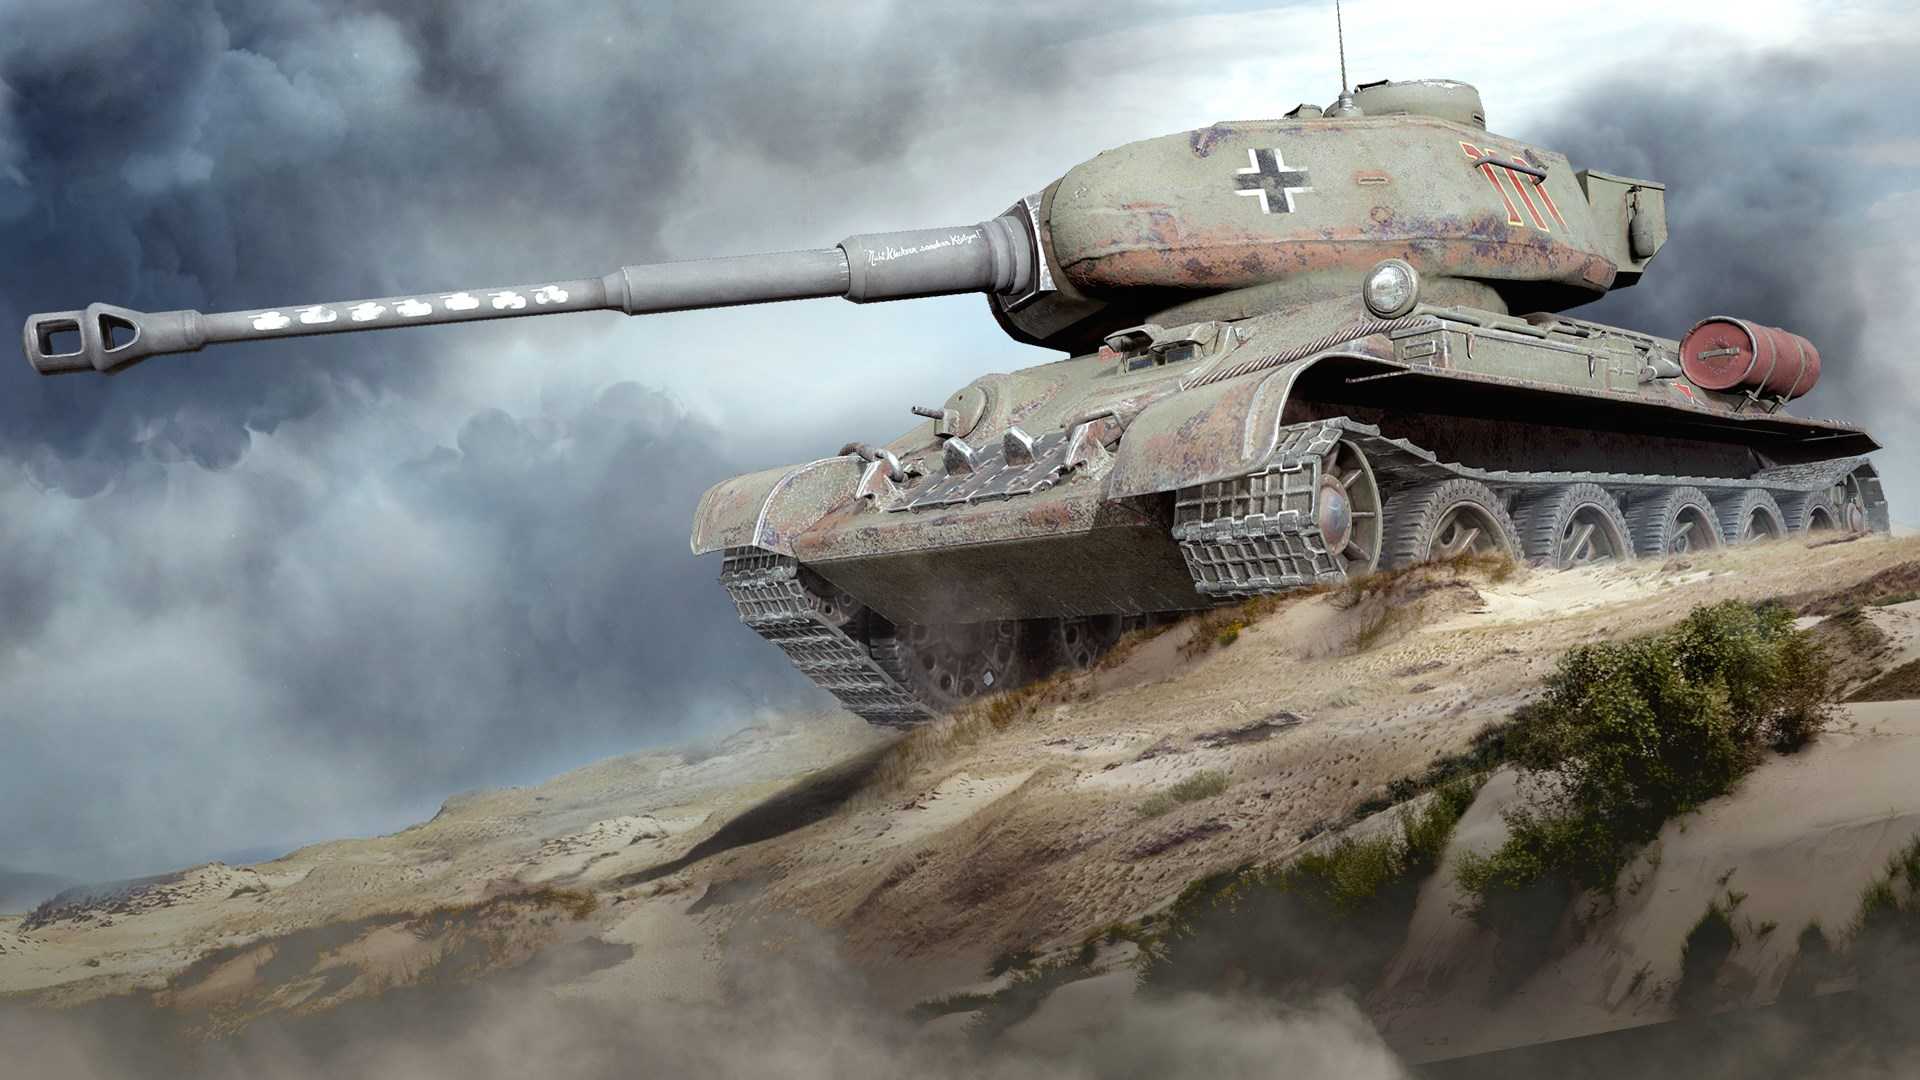 Сравните цен и купите World of Tanks - T-34-88 по меньше цене на Xbox One. 